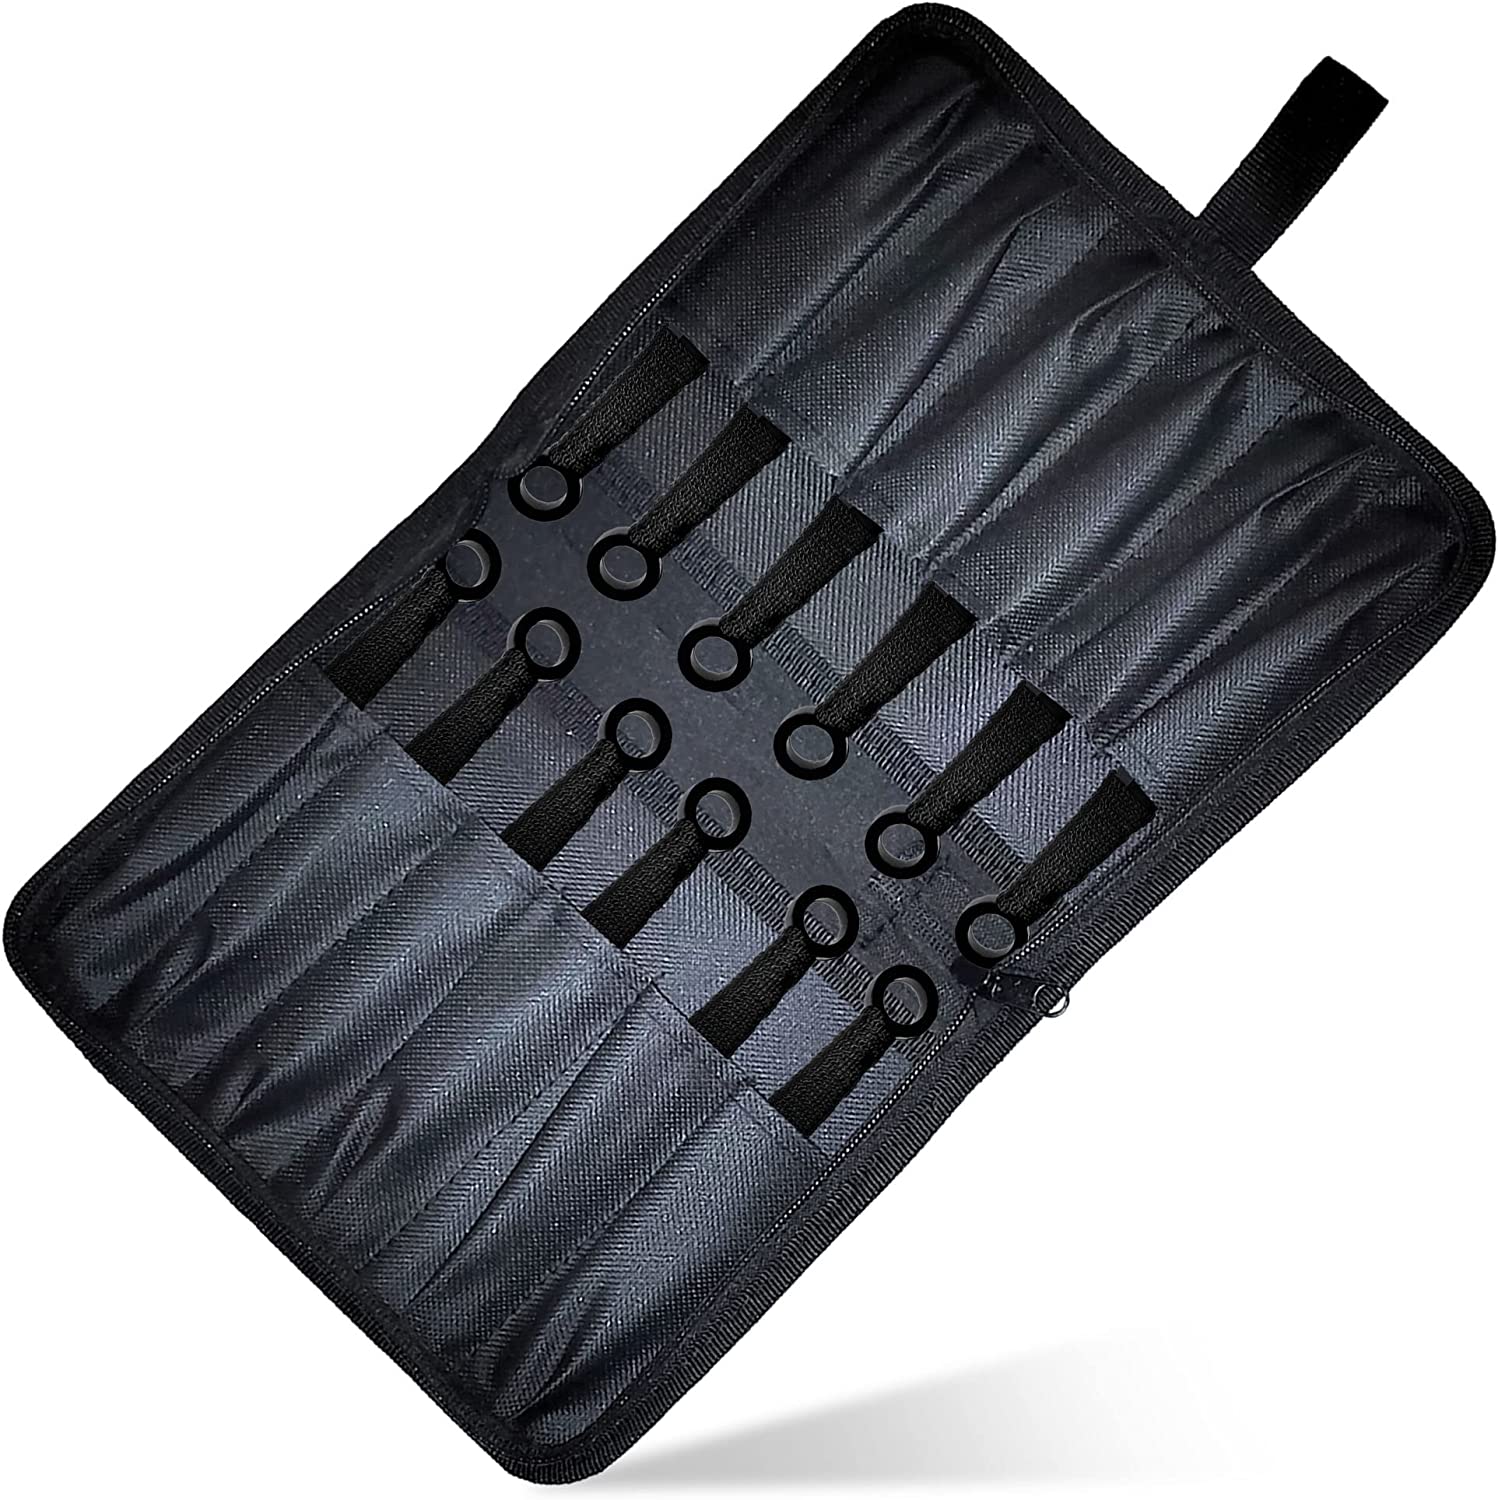 12 schwarze und silberne Wurfmesser mit Zielscheibe